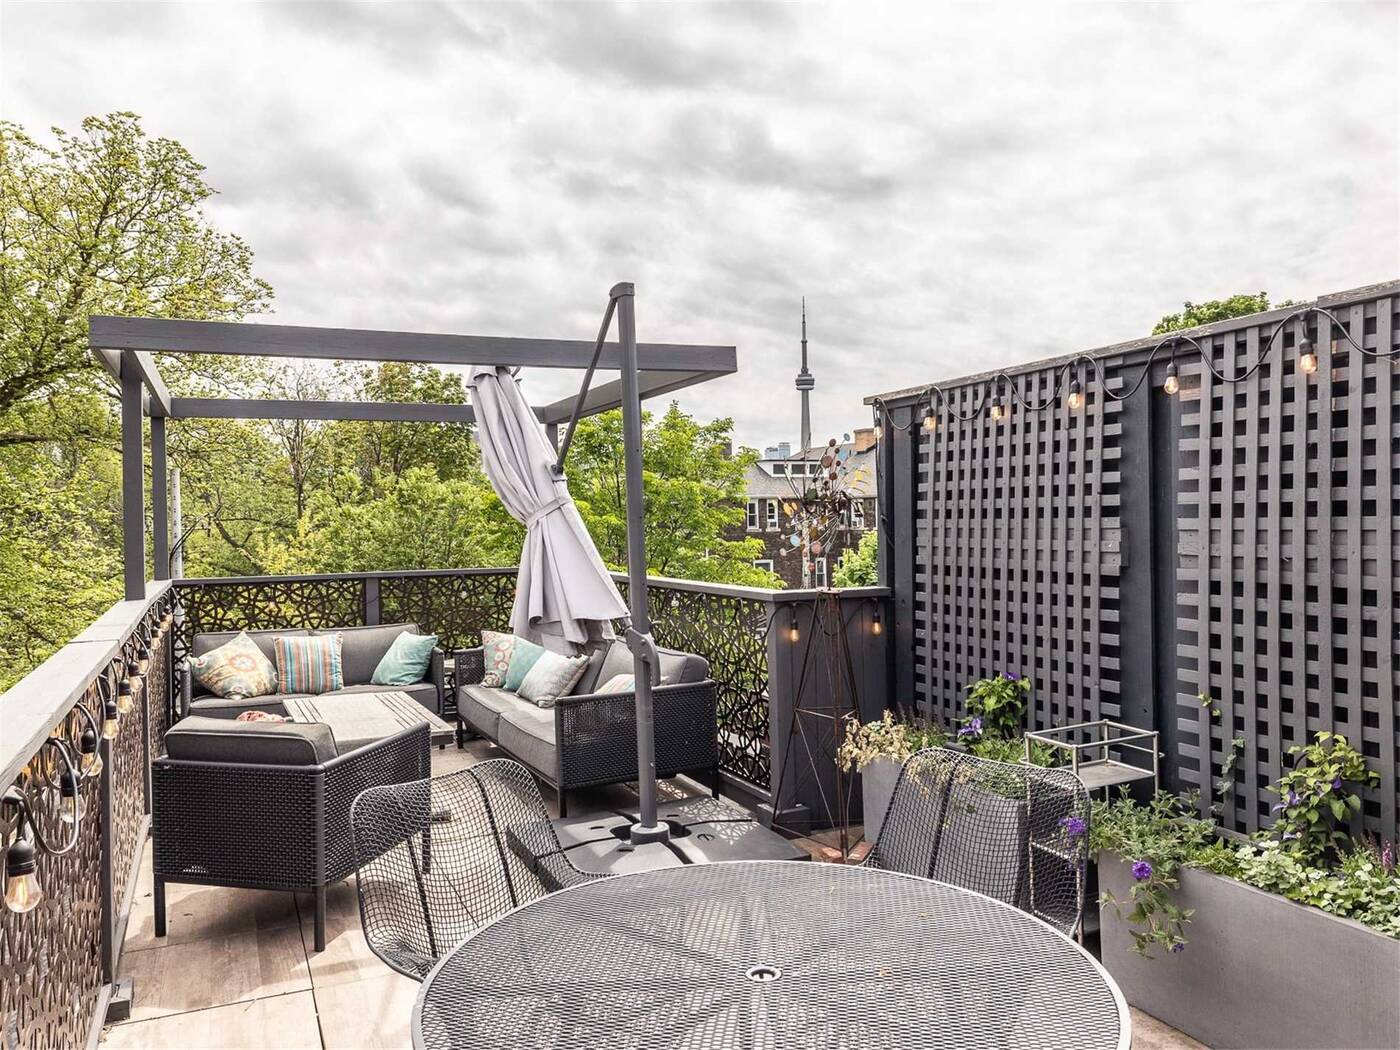 70 Nicest Rooftop Garden Ideas  Rooftop terrace design, Rooftop patio  design, Terrace design